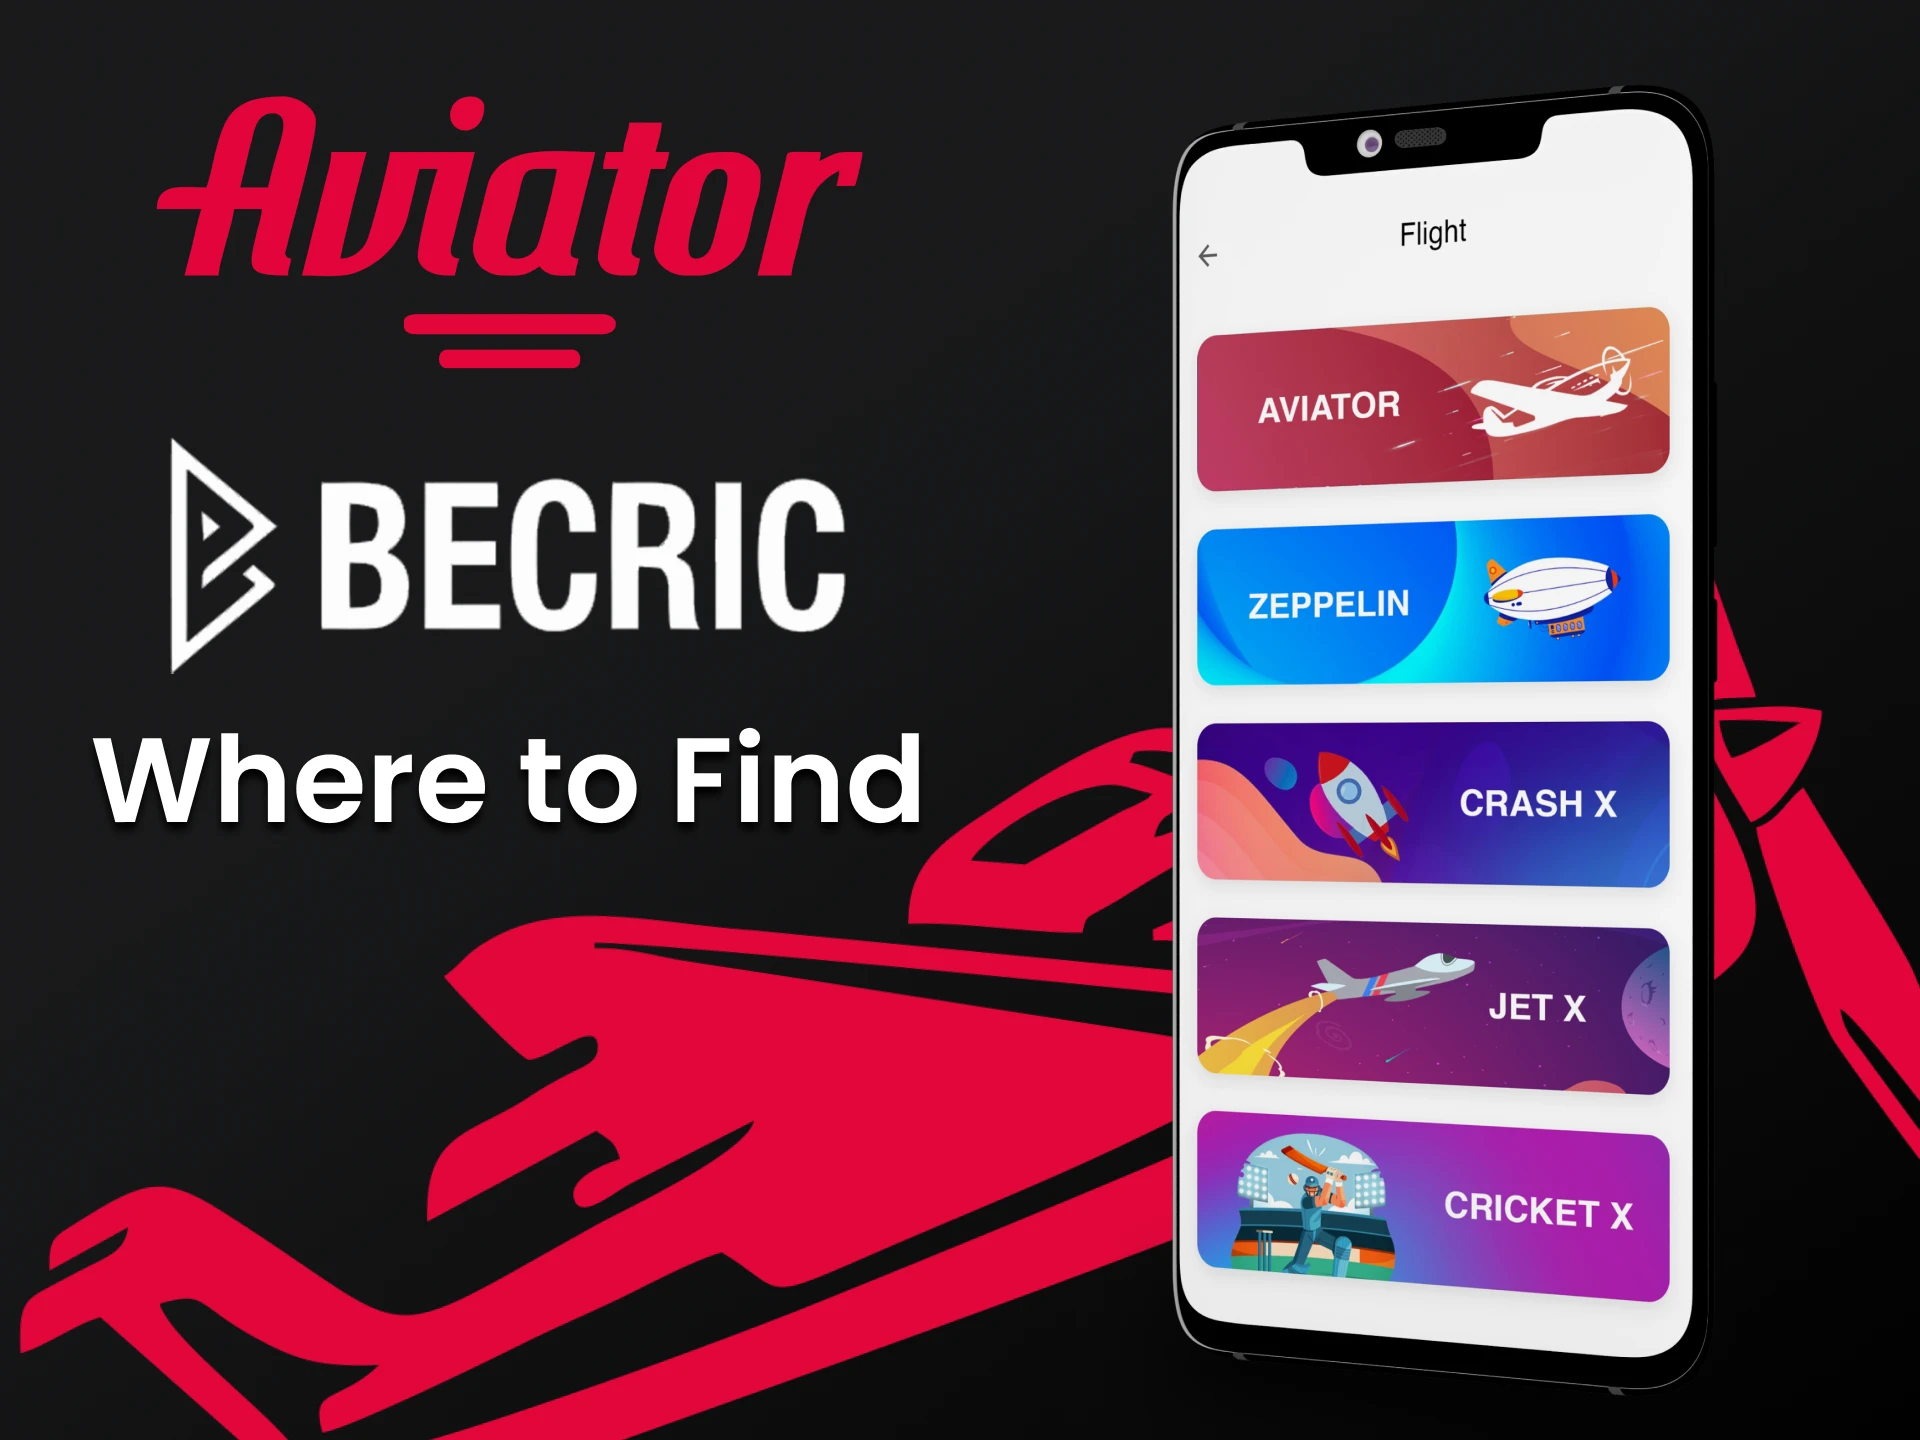 Encontrar o jogo Aviator no aplicativo Becric será difícil.